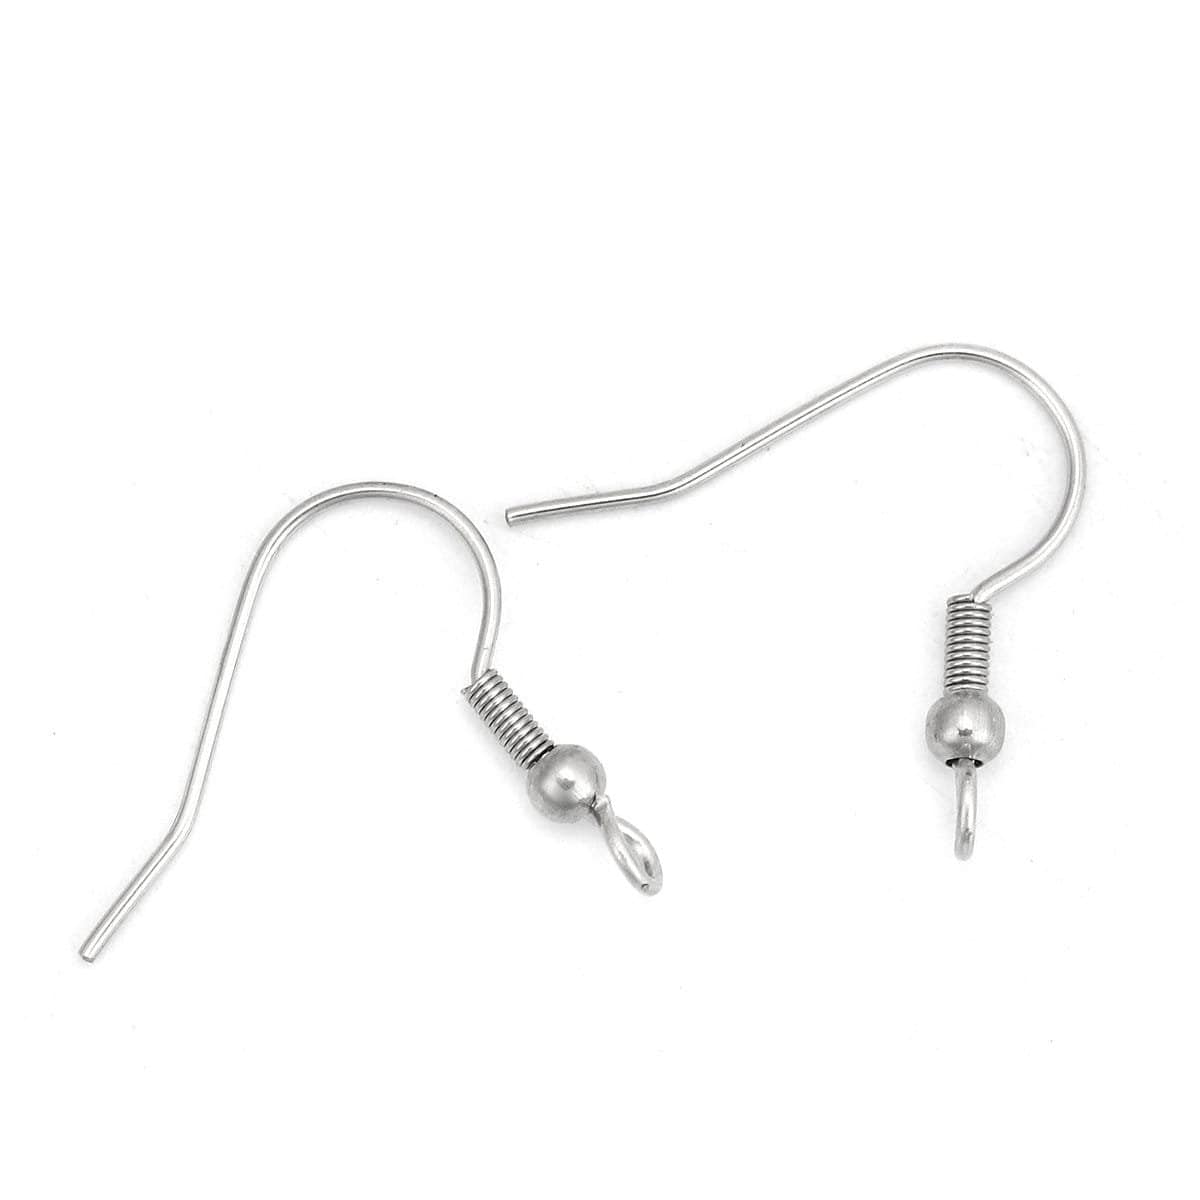 Steel Earring Wire 